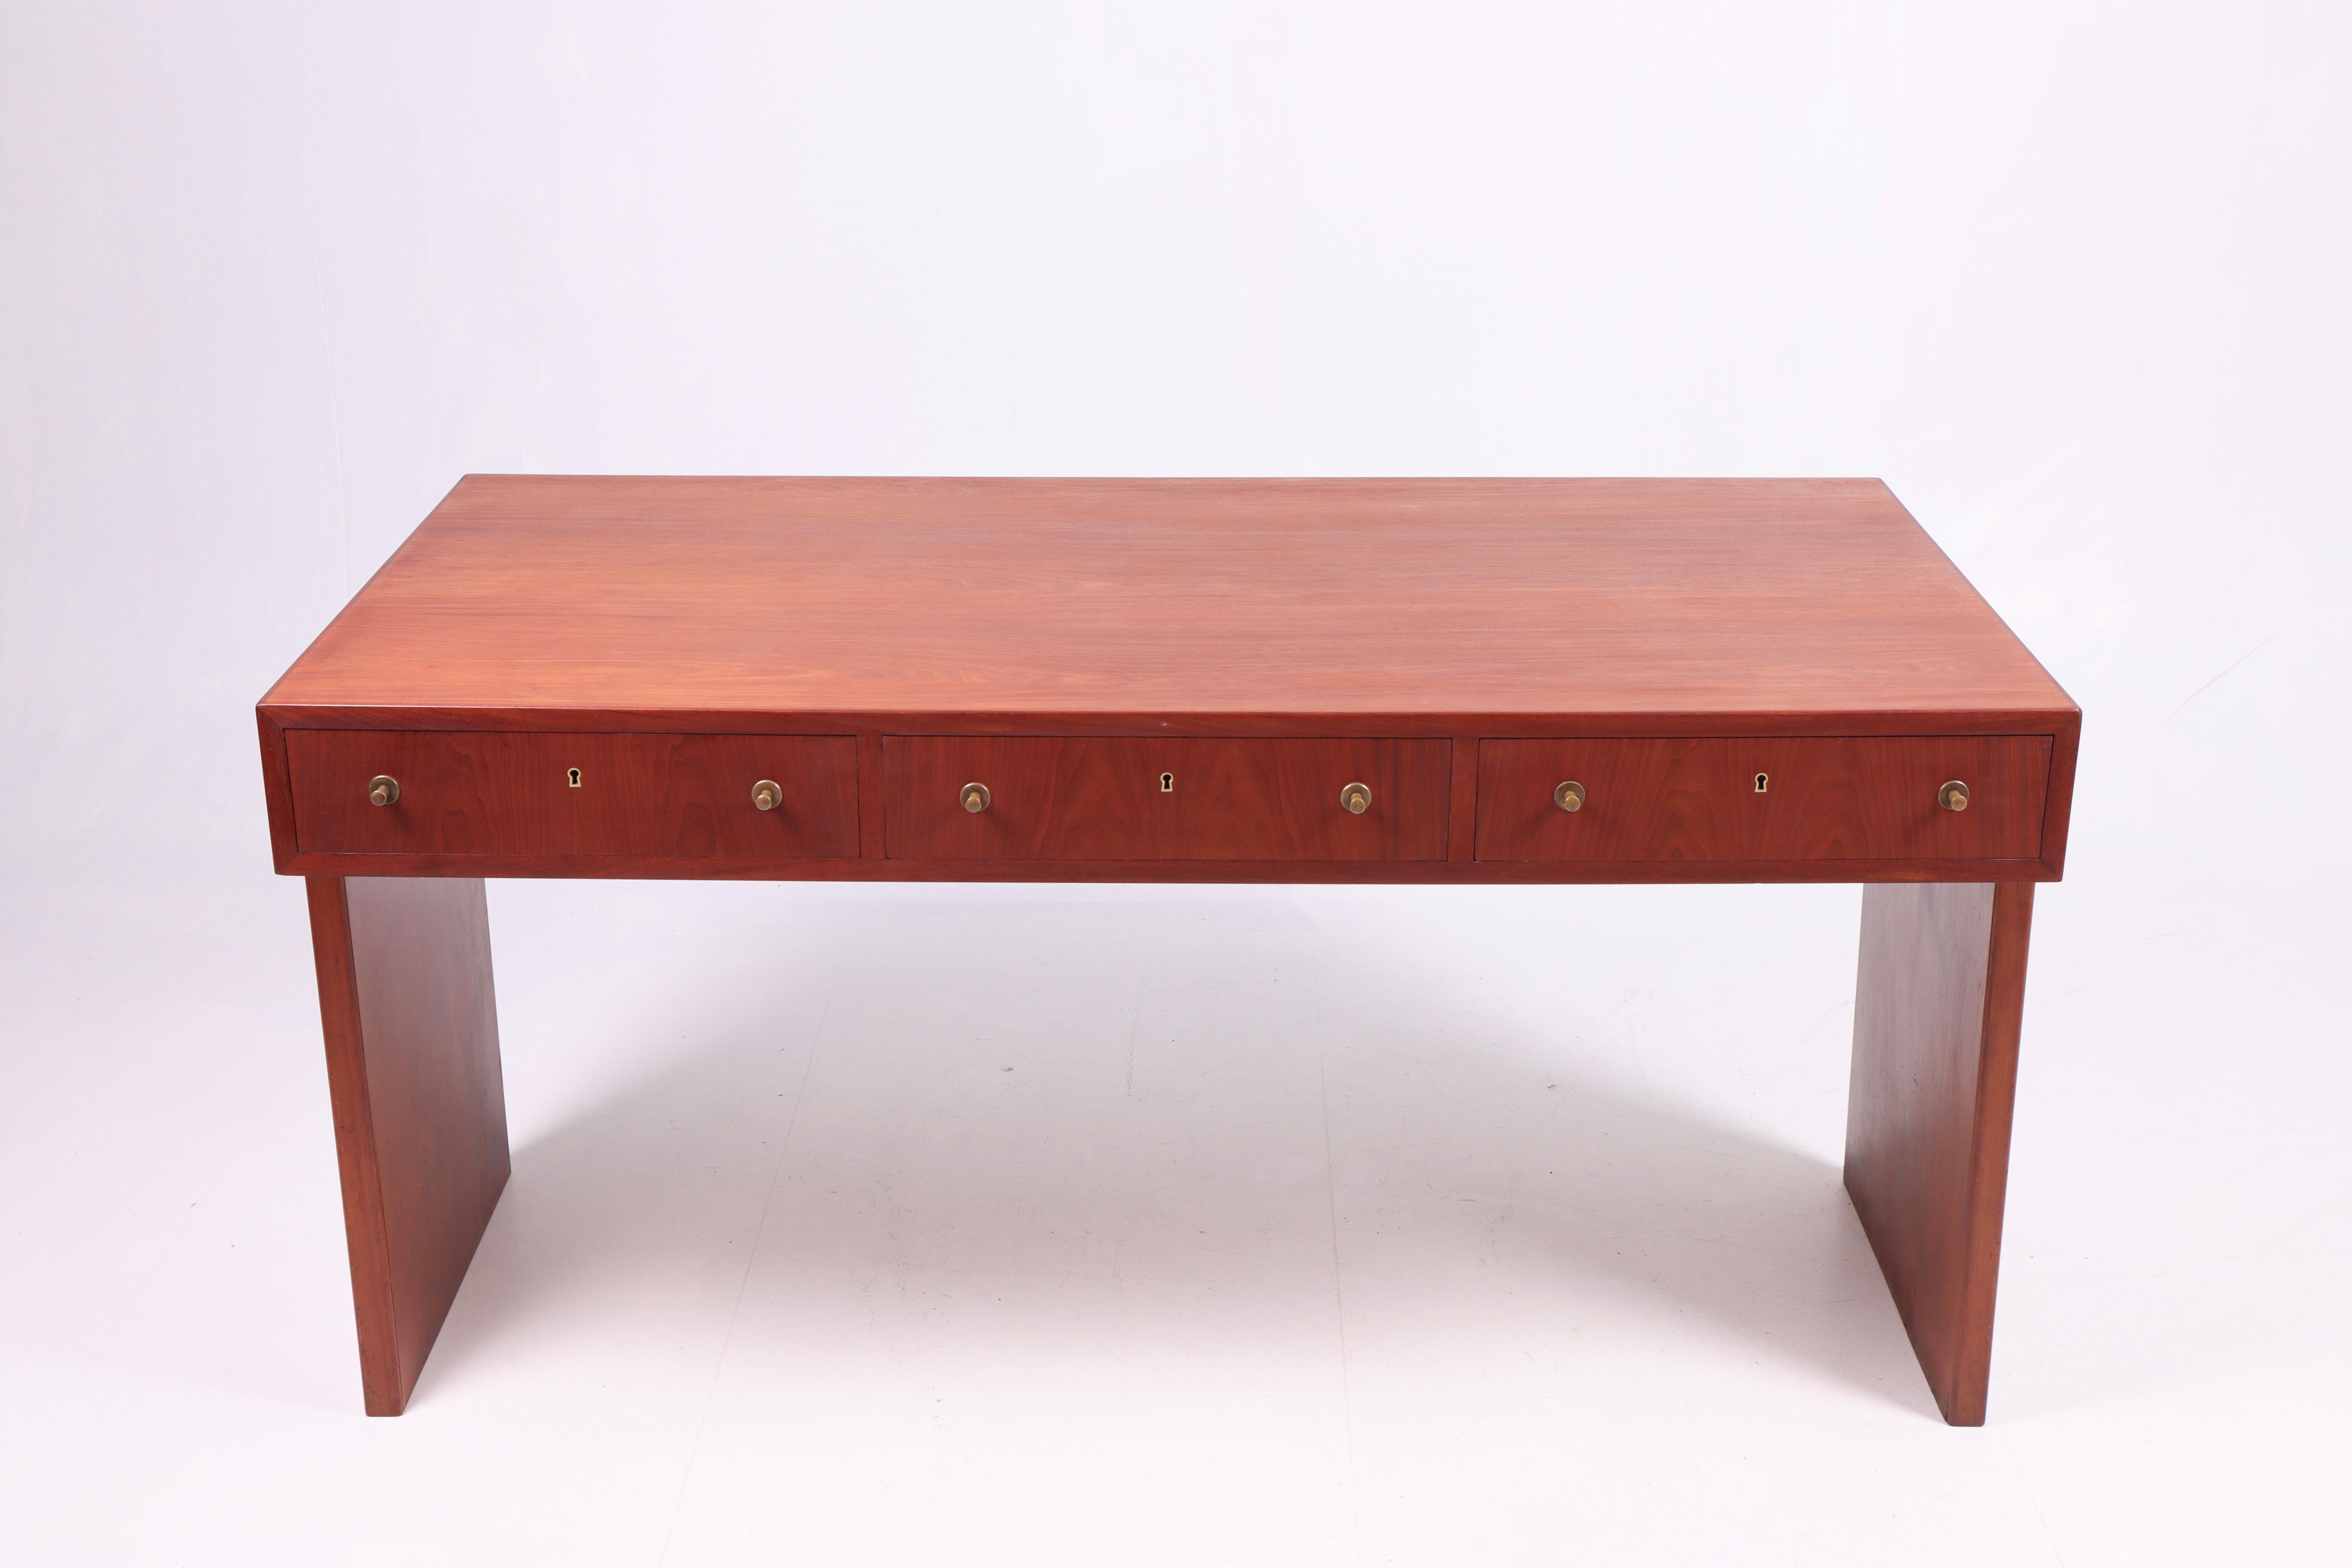 Toller Schreibtisch aus Mahagoni, entworfen und hergestellt von einem dänischen Tischler in den 1950er Jahren.